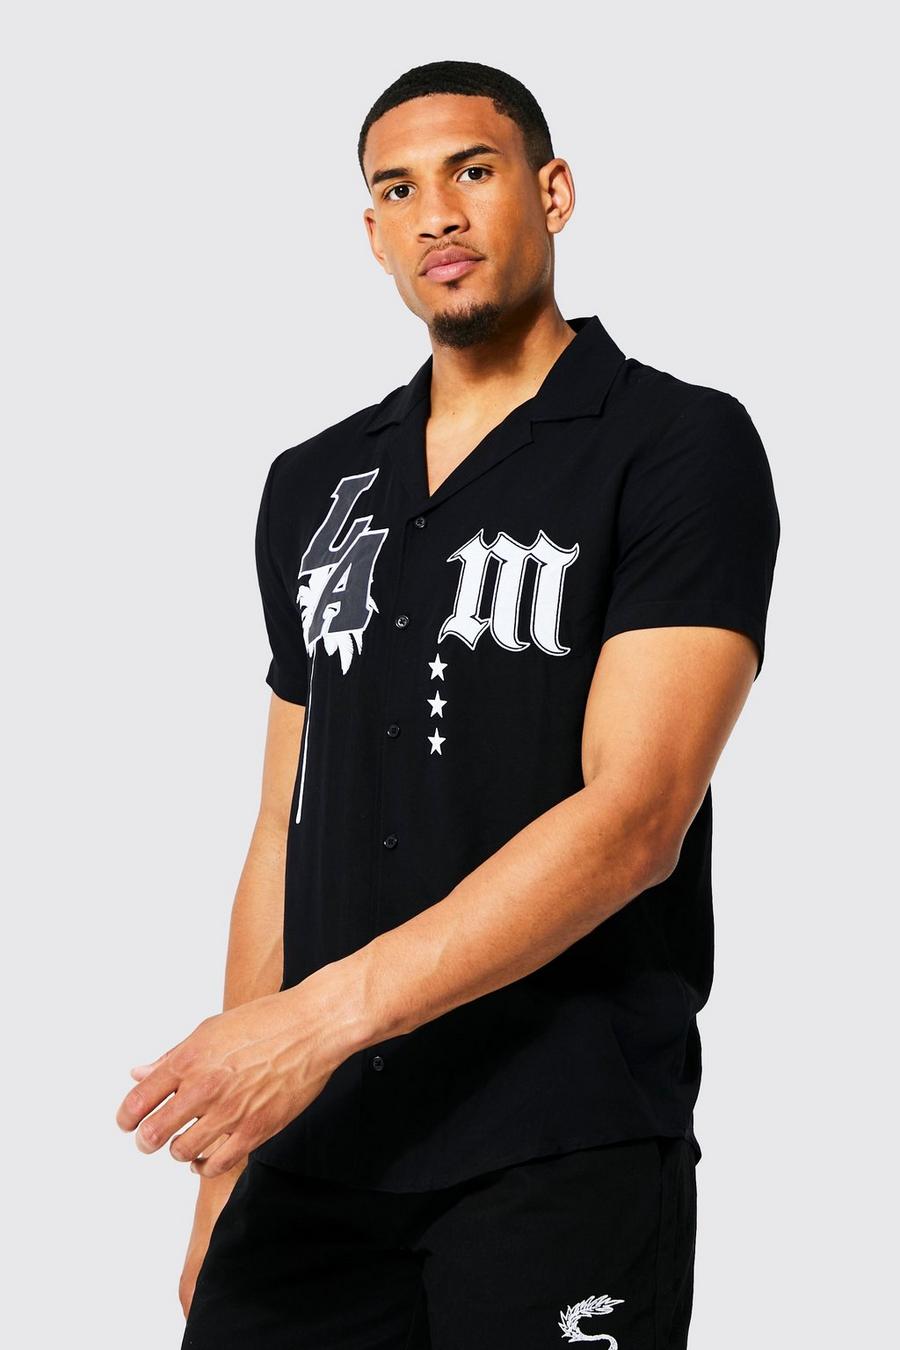 שחור nero חולצת ויסקוזה עם אפליקציית LA ושרוולים קצרים, לגברים גבוהים